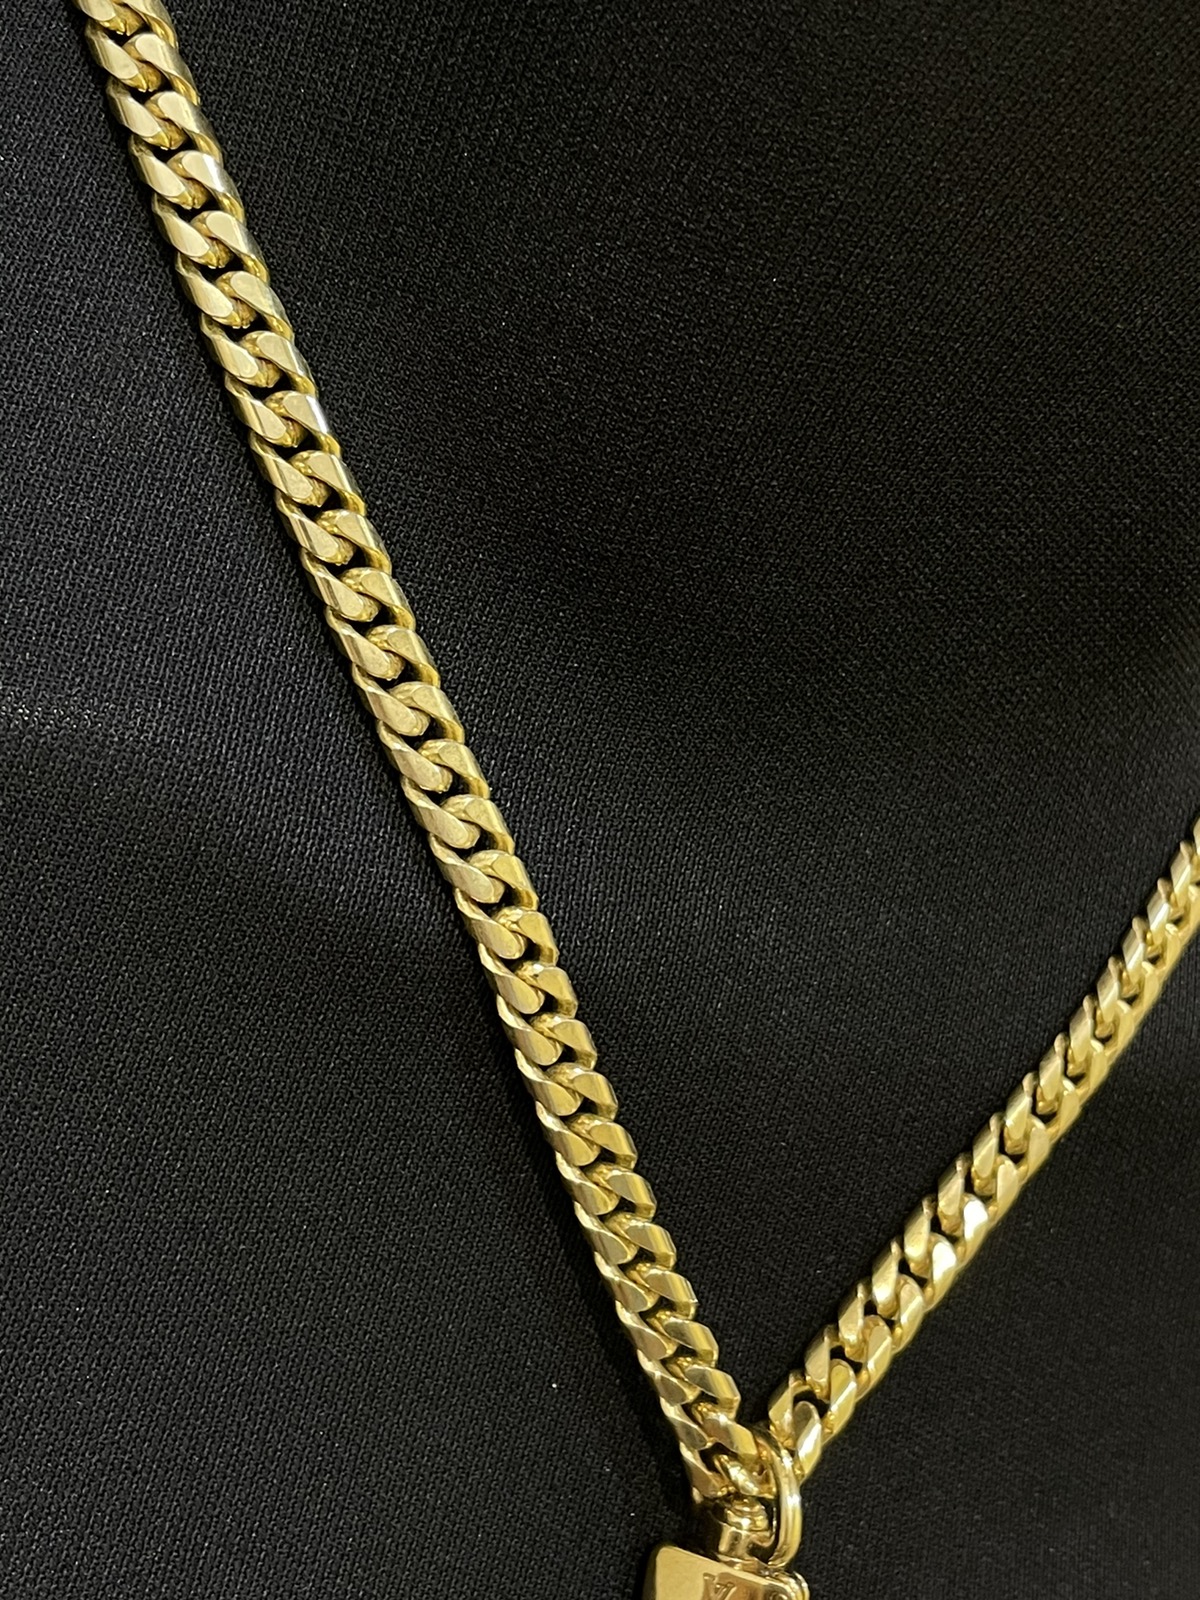 Louis Vuitton padlock / key / chain gold - 5